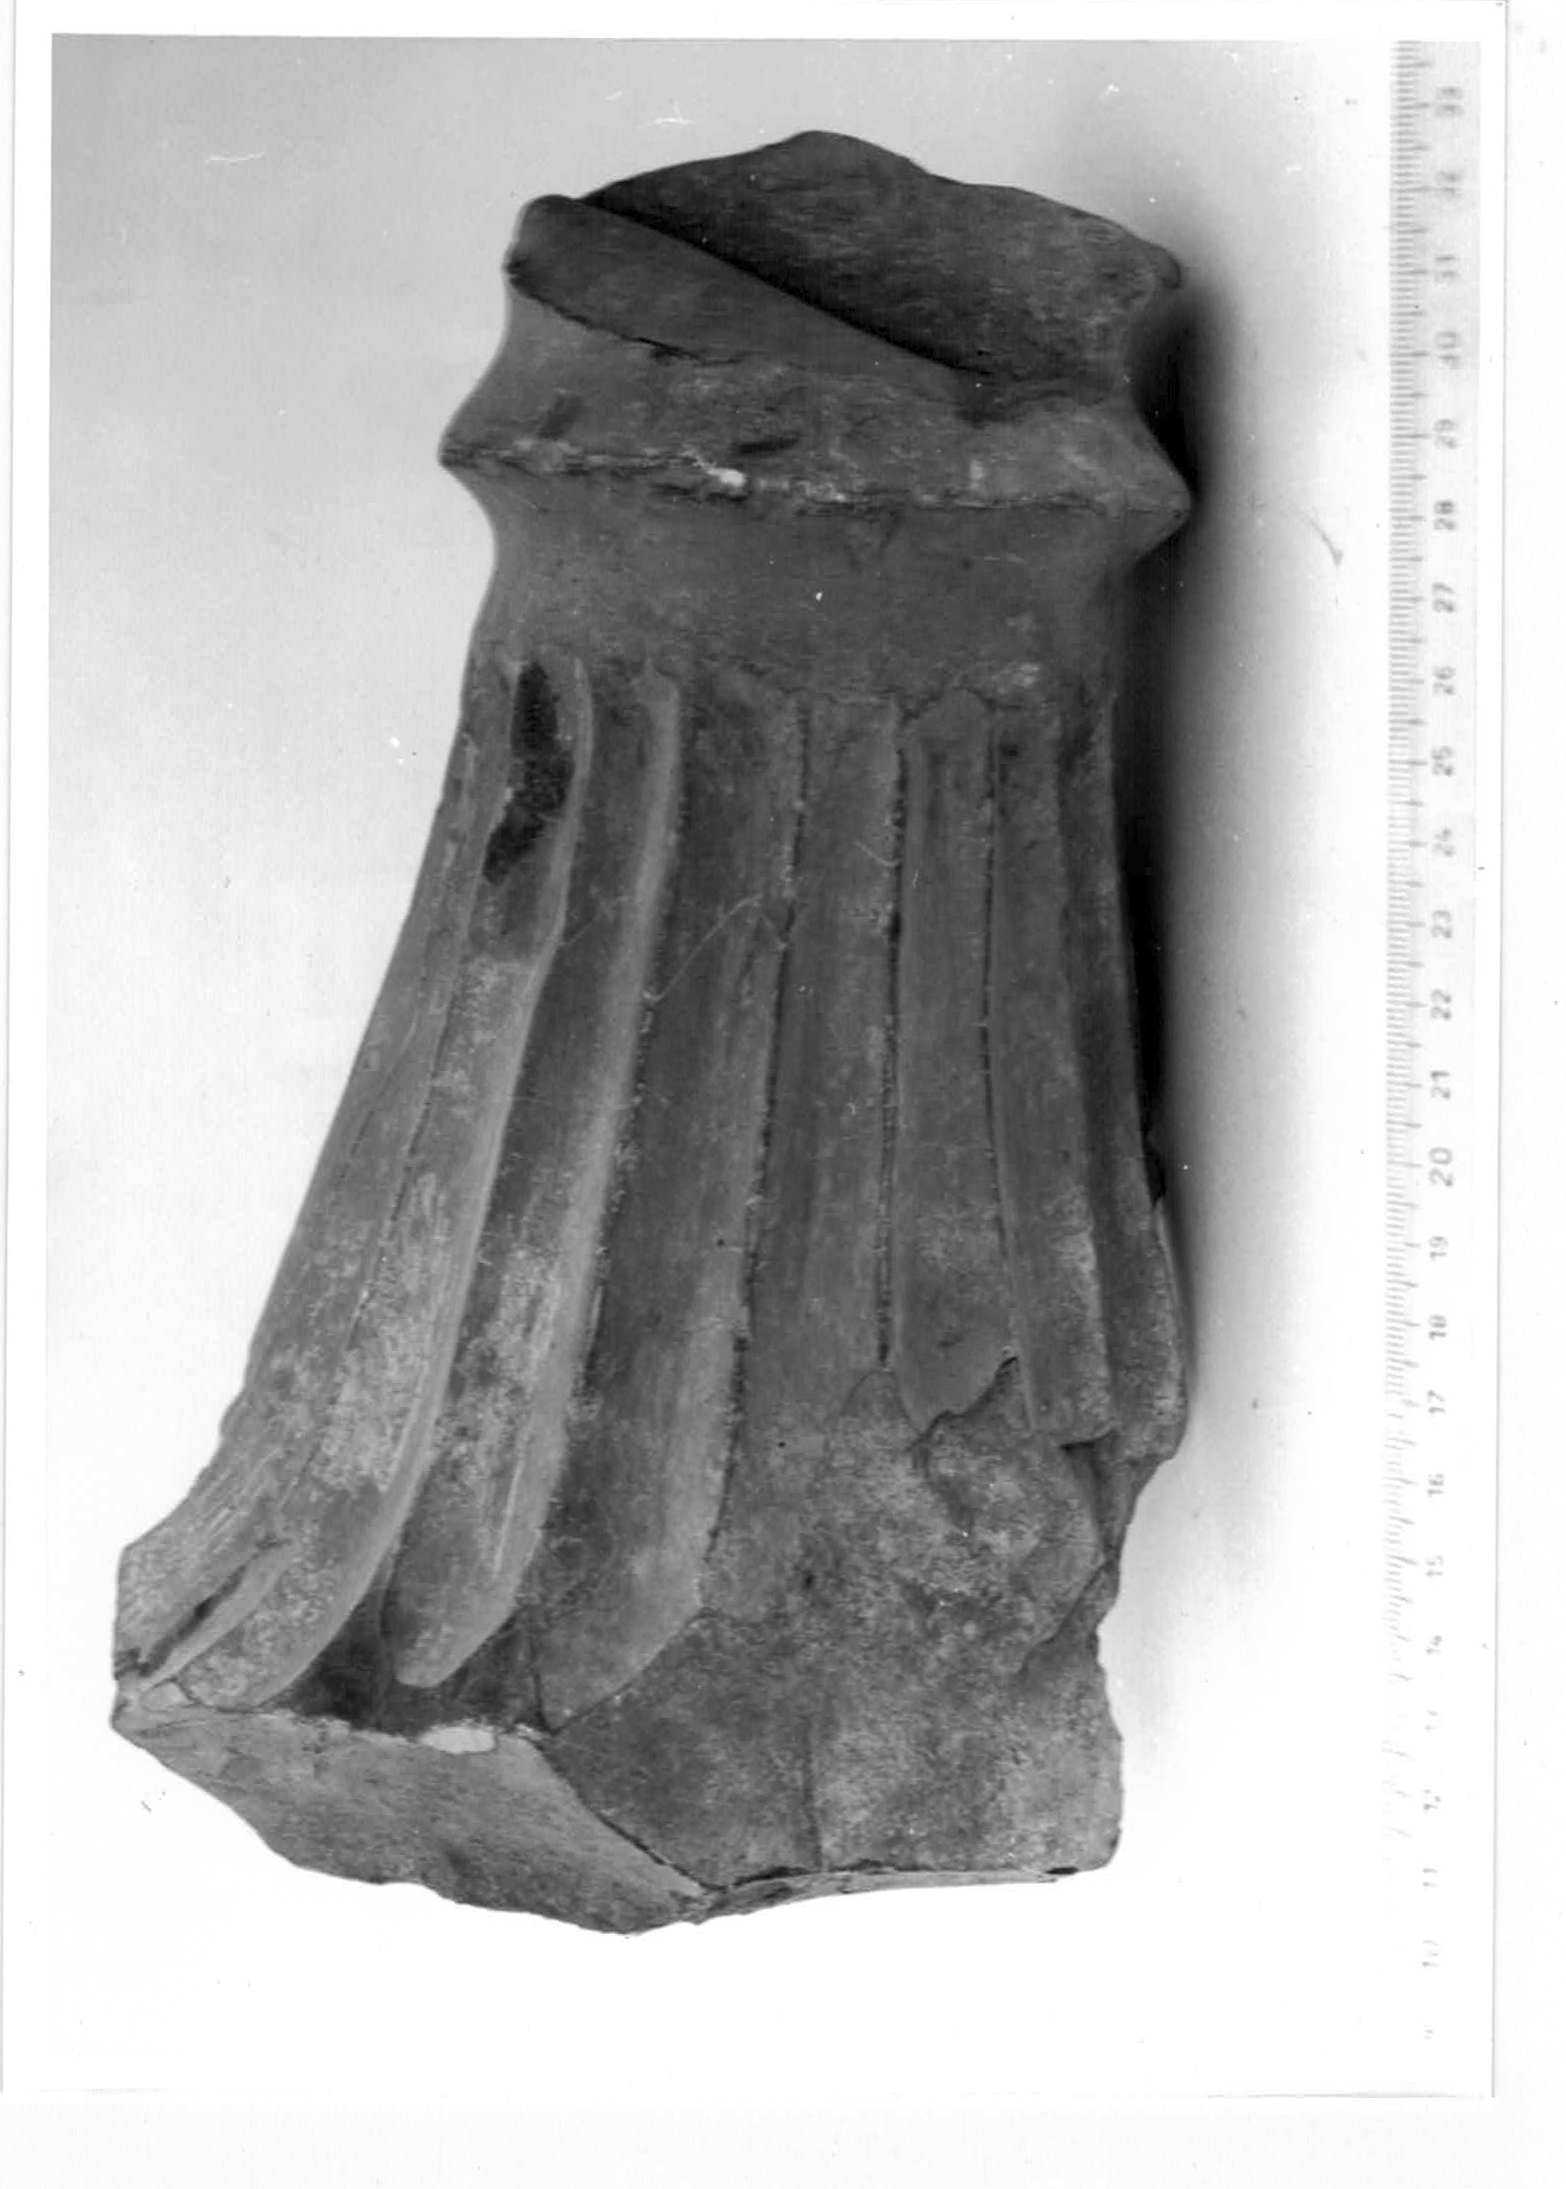 piedistallo, ornamentale - età romana imperiale (I d.C, II d.C)